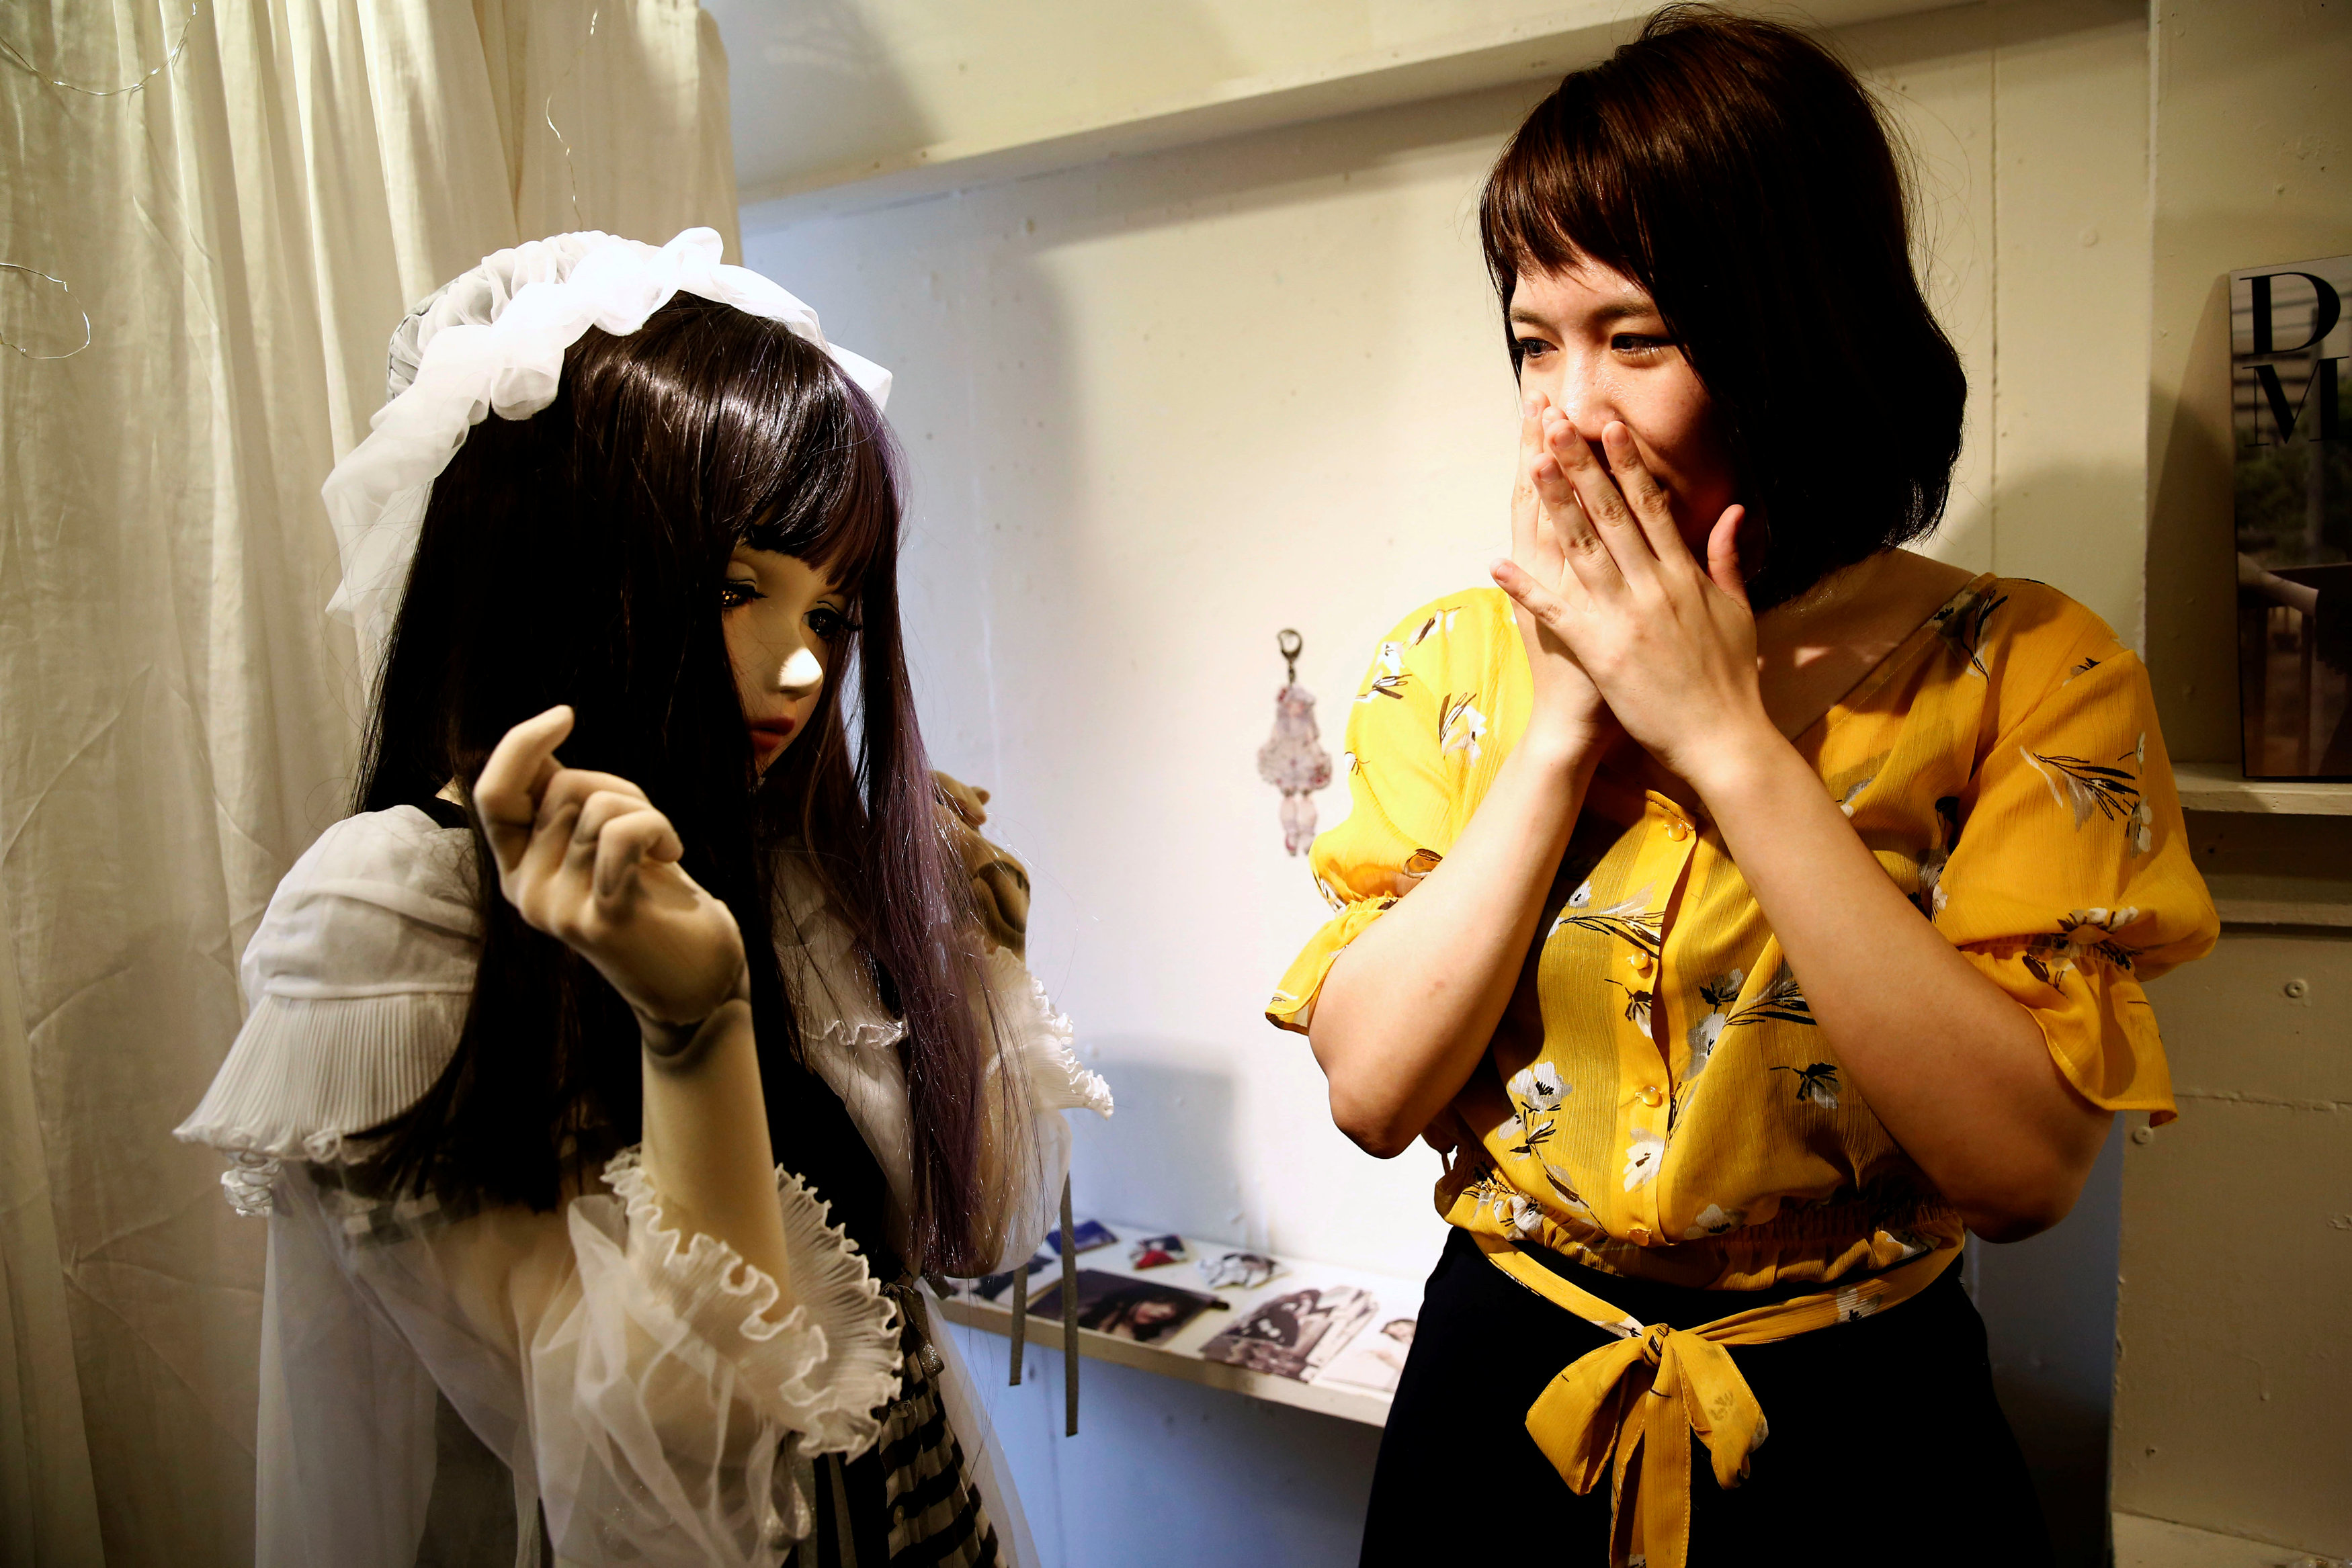 فتاة تعبر عن انبهارها بتصميم الدمية الحية فى اليابان